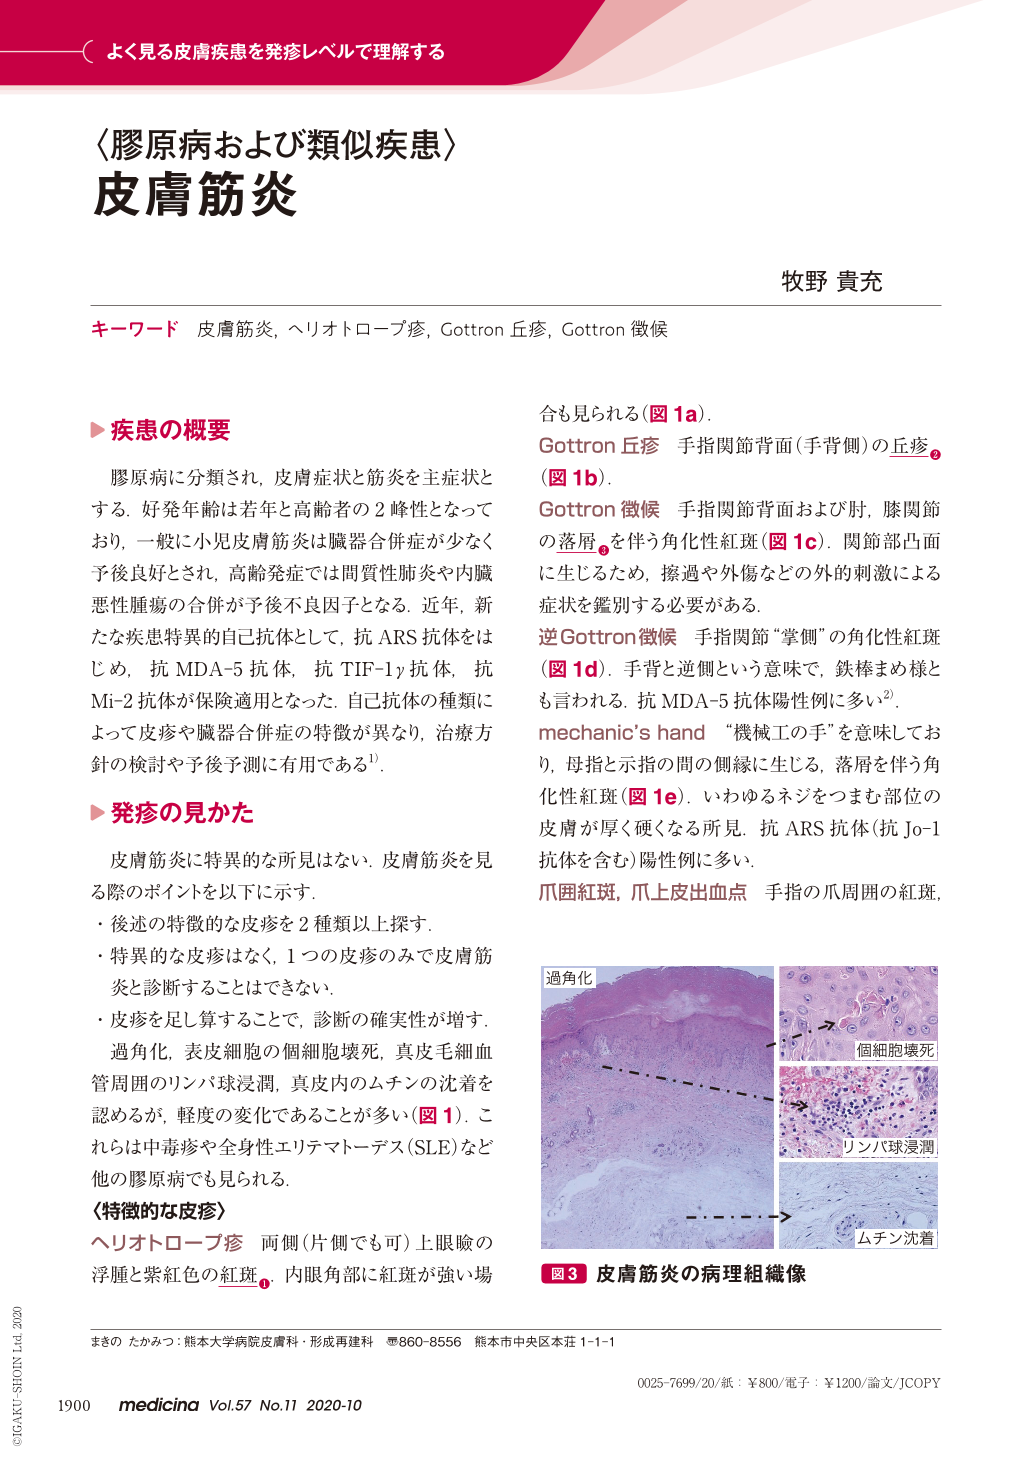 皮膚筋炎 (medicina 57巻11号) | 医書.jp